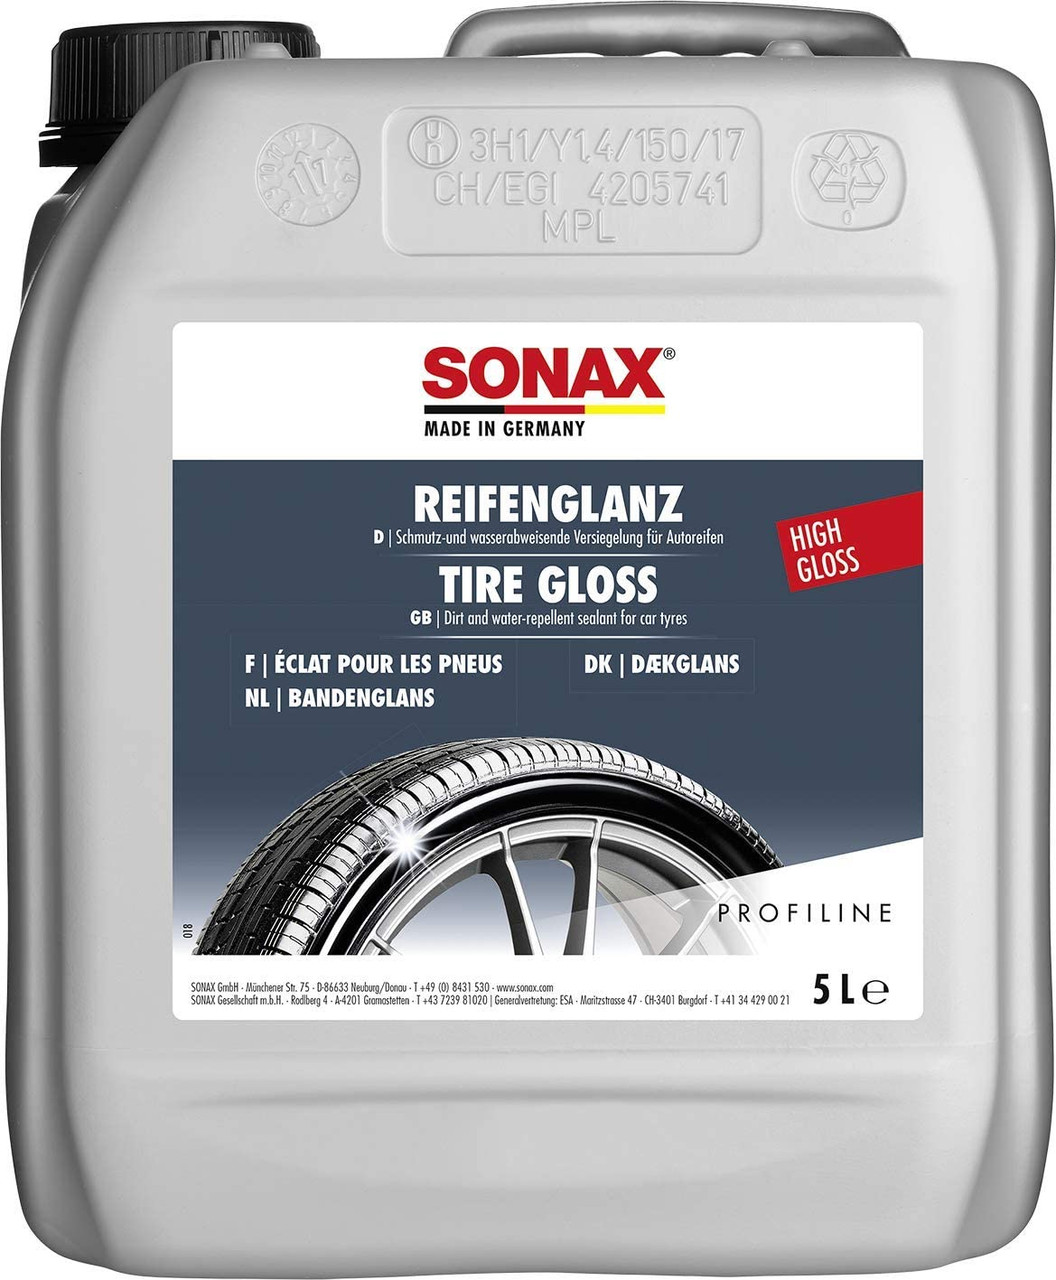 SONAX Tire Gloss Gel